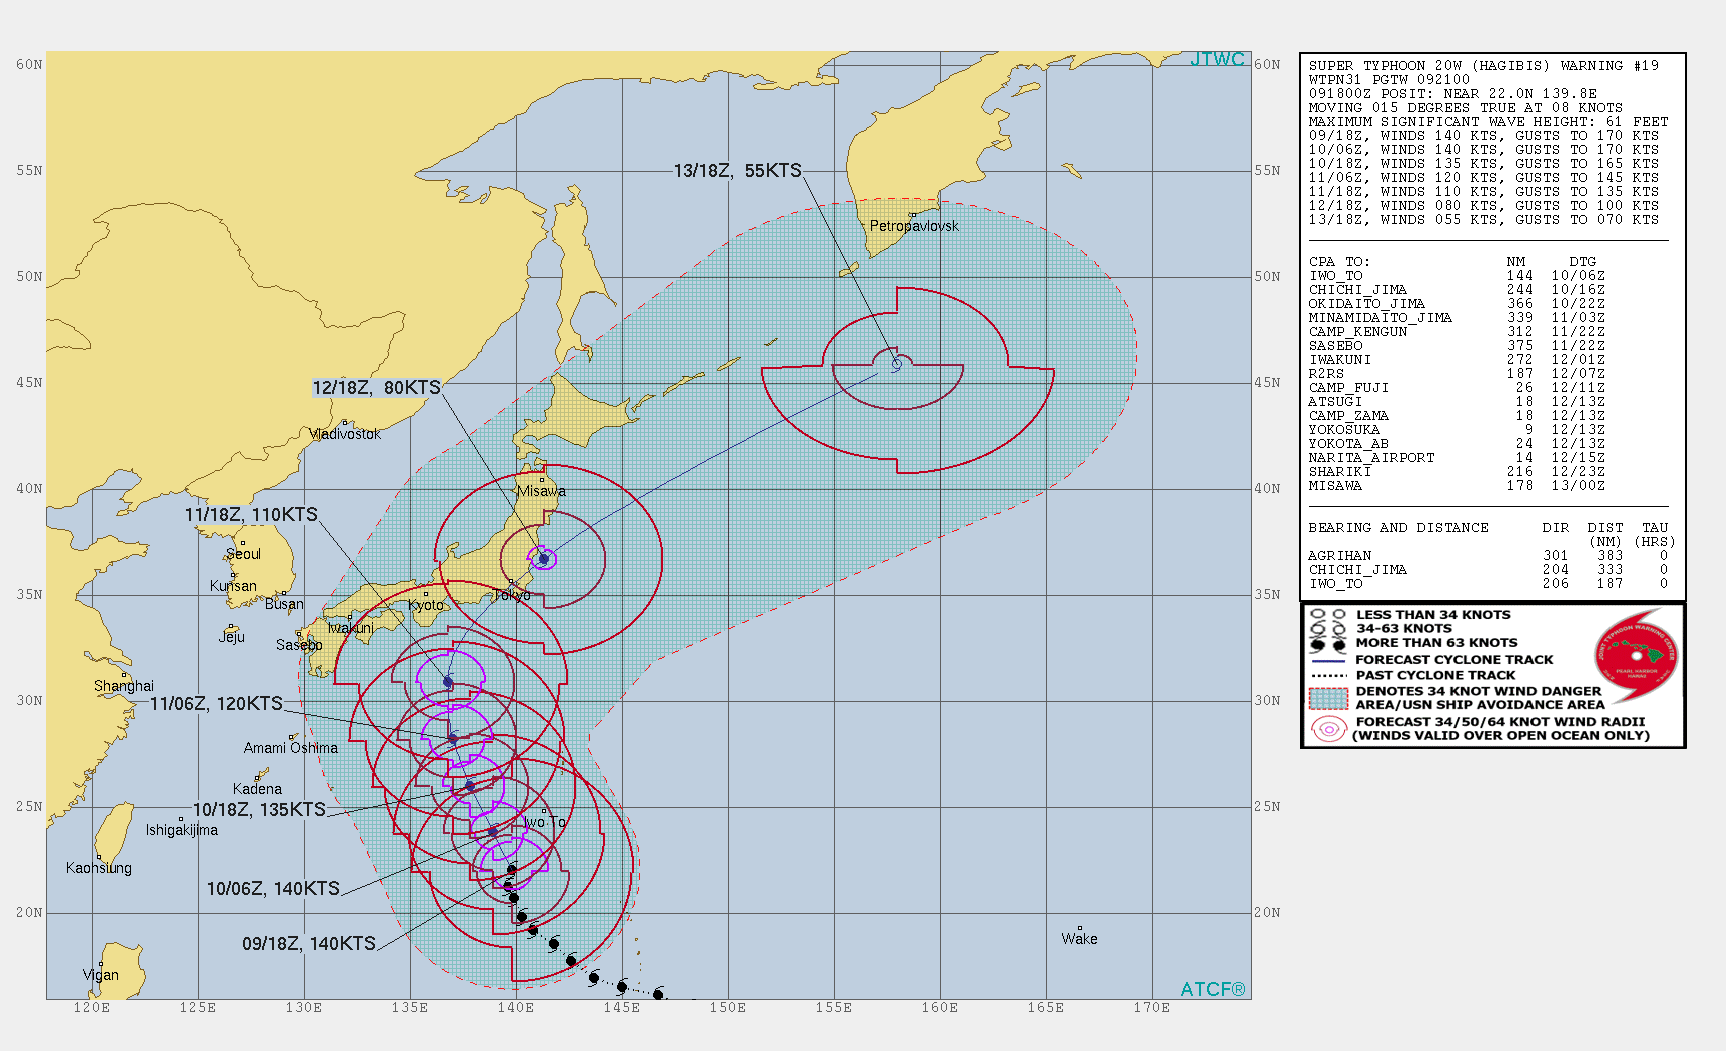 Rota do furacão e estimativa de ventos em nós (Joint Typhoon Warning Center)